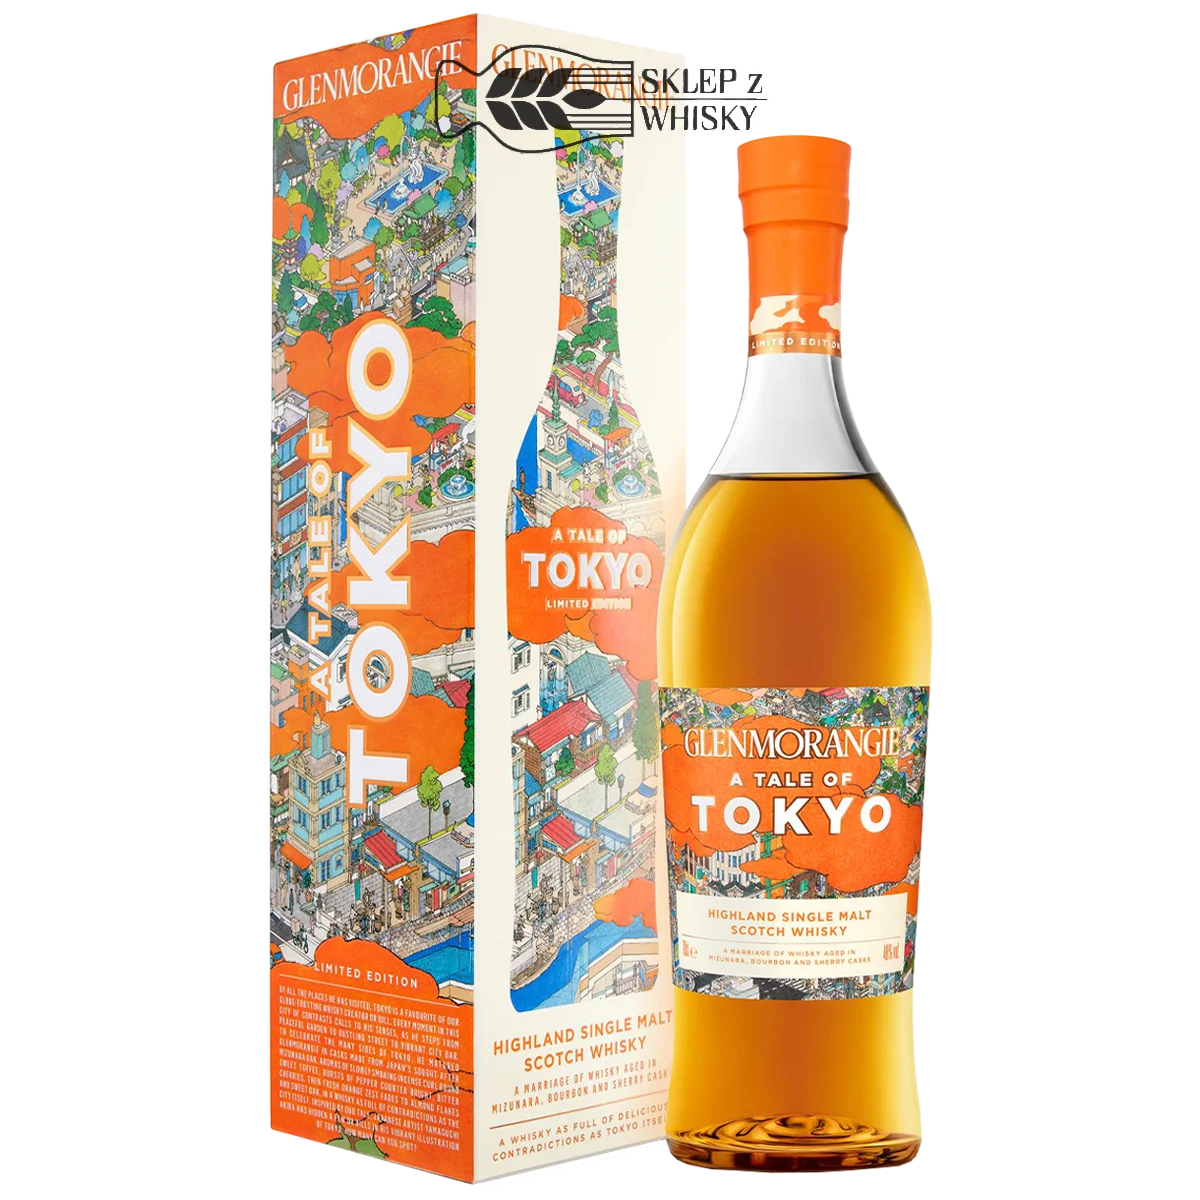 Glenmorangie A Tale Of Tokyo- szkocka whisky single malt z regionu Highland, 700 ml, w pudełku.